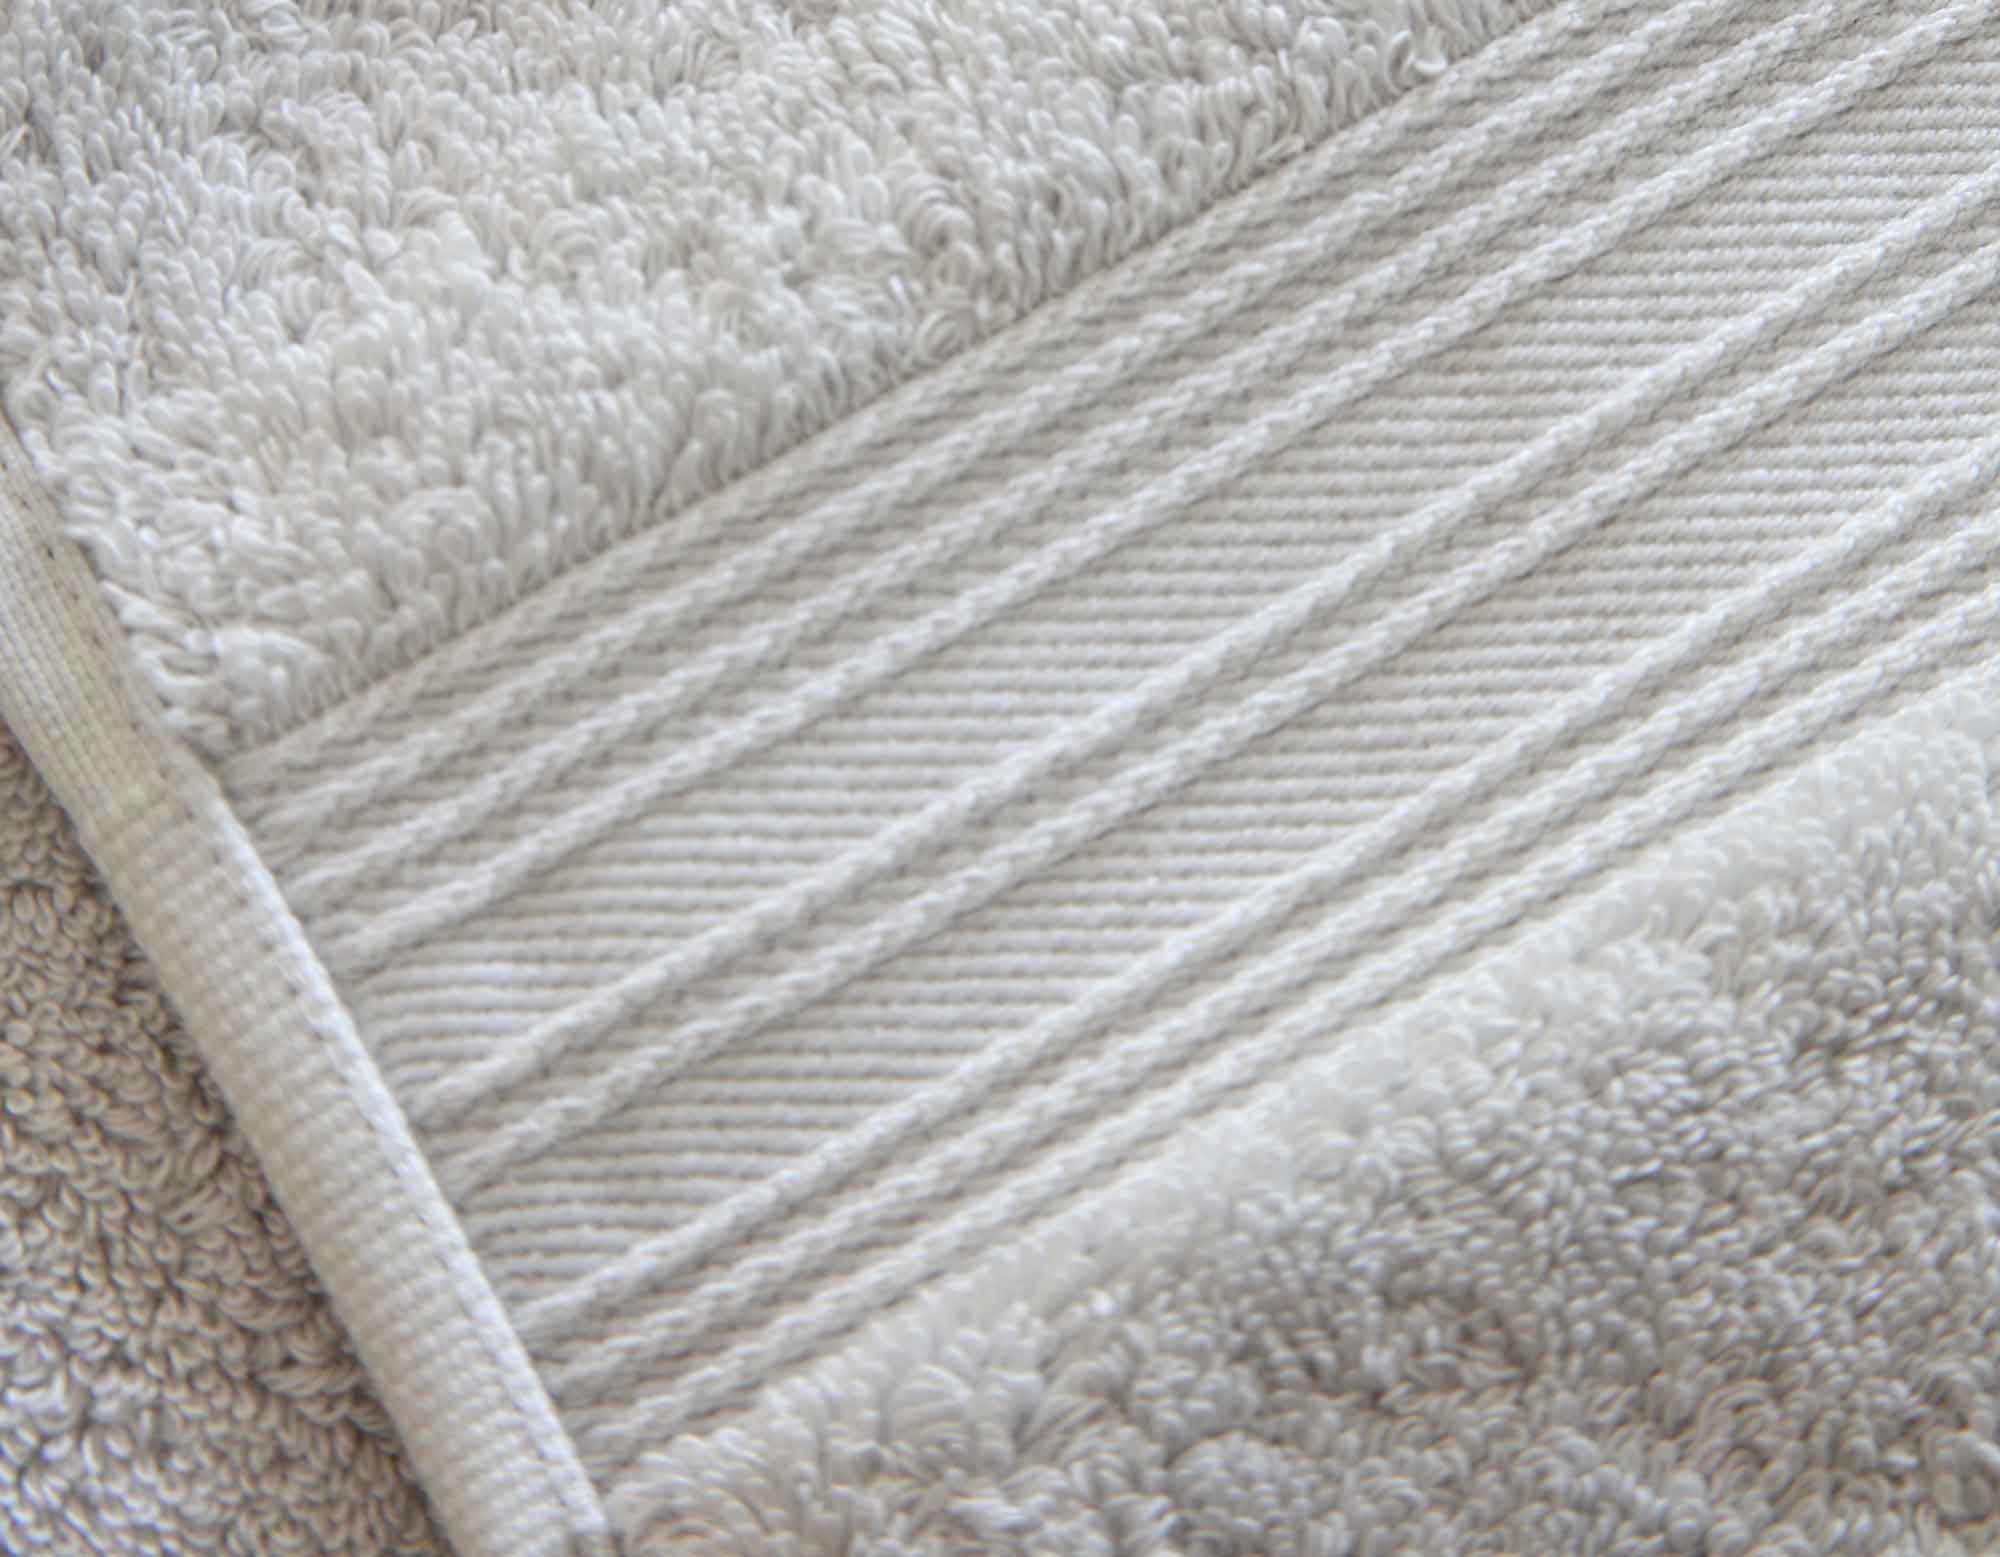 Pearl grey bath towel showing hem and loop details